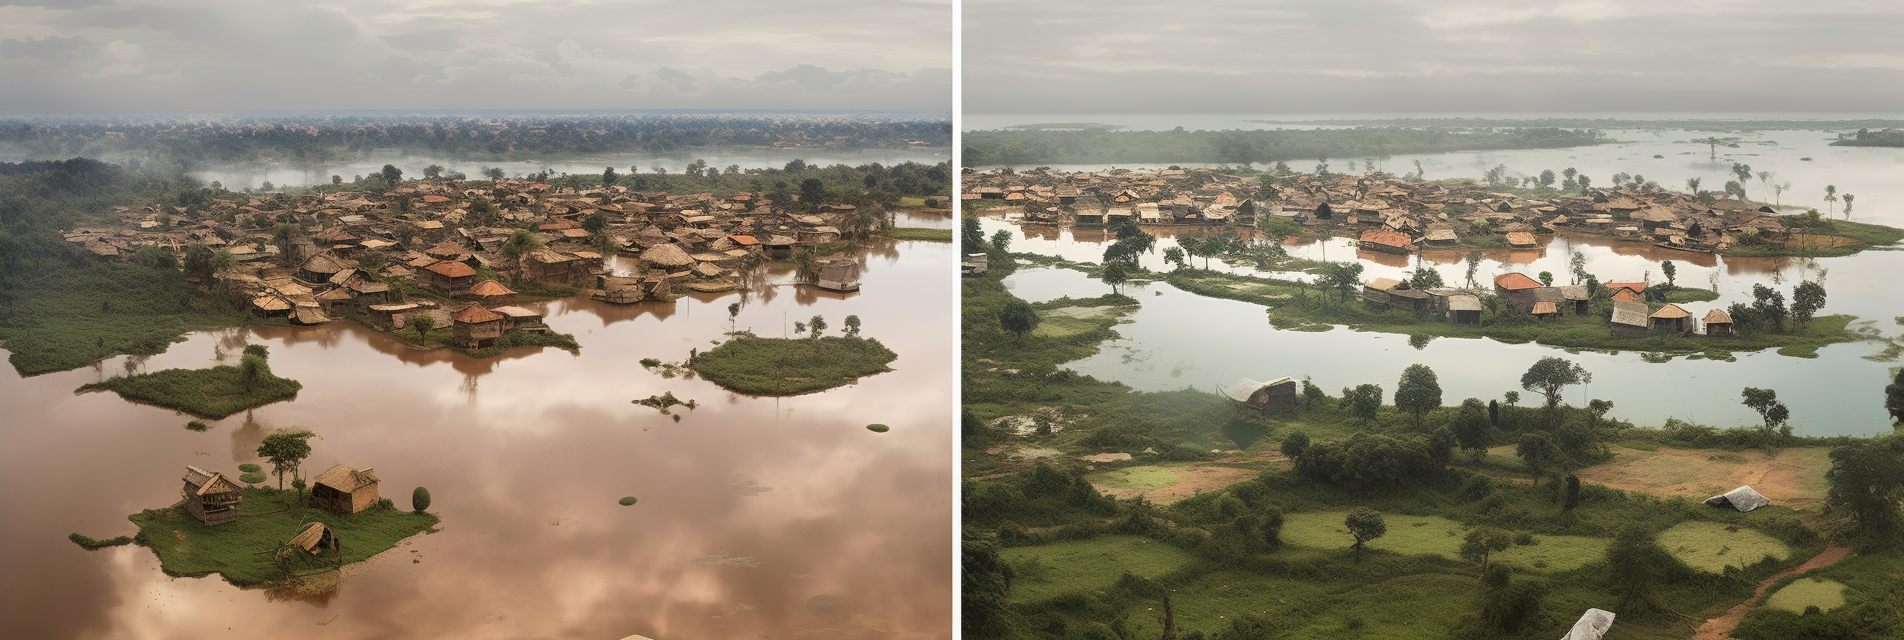 Benin-Klimaat reisinformatie voor jouw vakantie